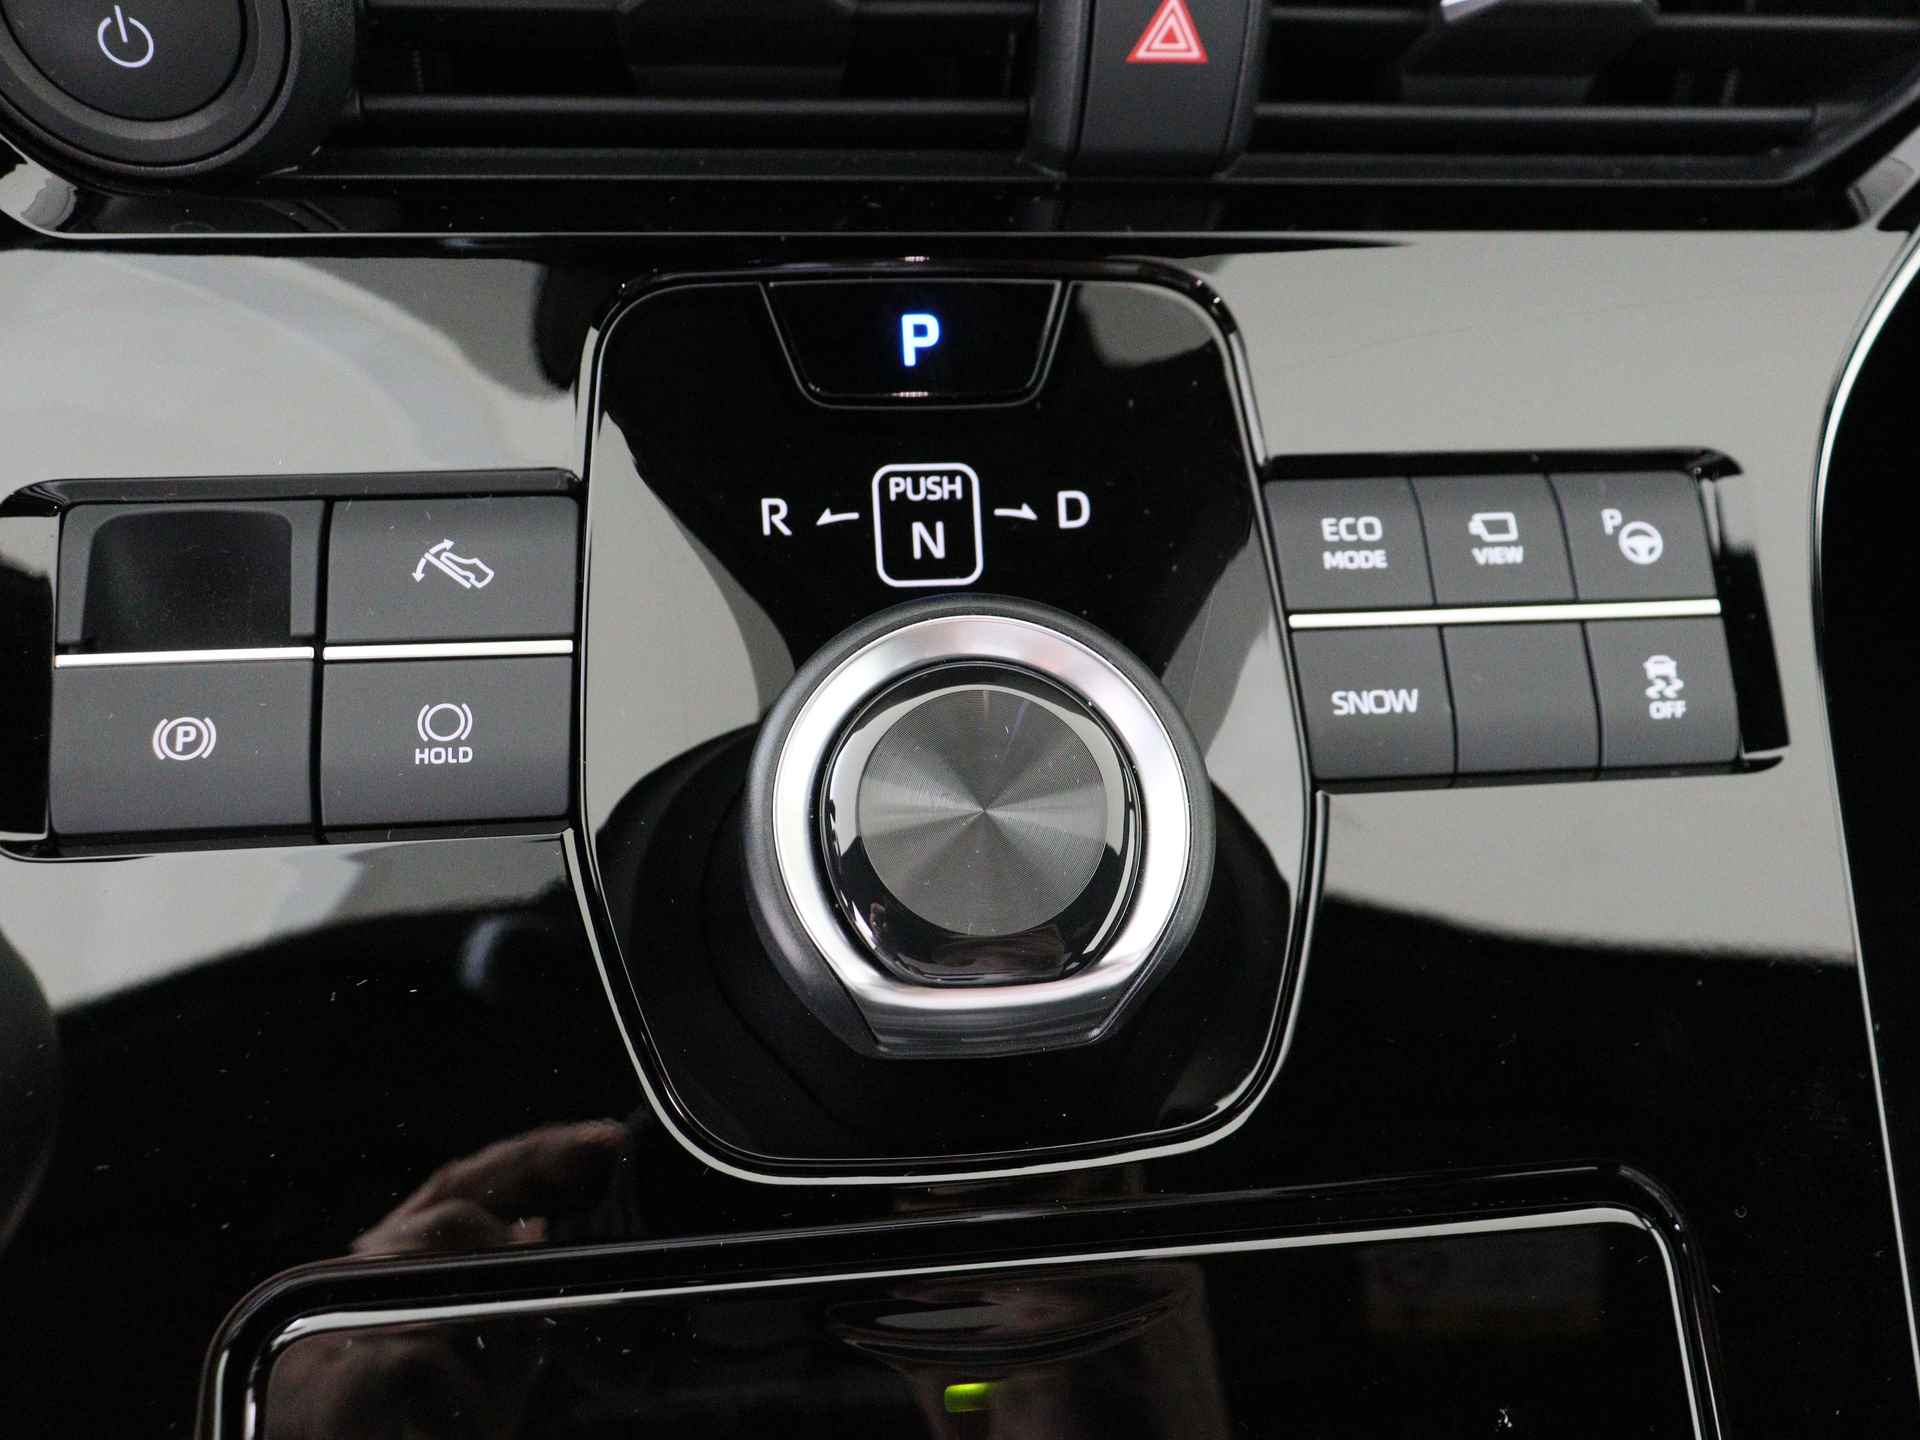 Toyota Bz4x Launch Edition Premium Bi-Tone uitvoering | Navigatie | Stoel&stuur verwarming | My T app | Panoramadak | Wegenbelasting vrij | Subsidie €2000,- aanvraag mogelijk. - 11/48